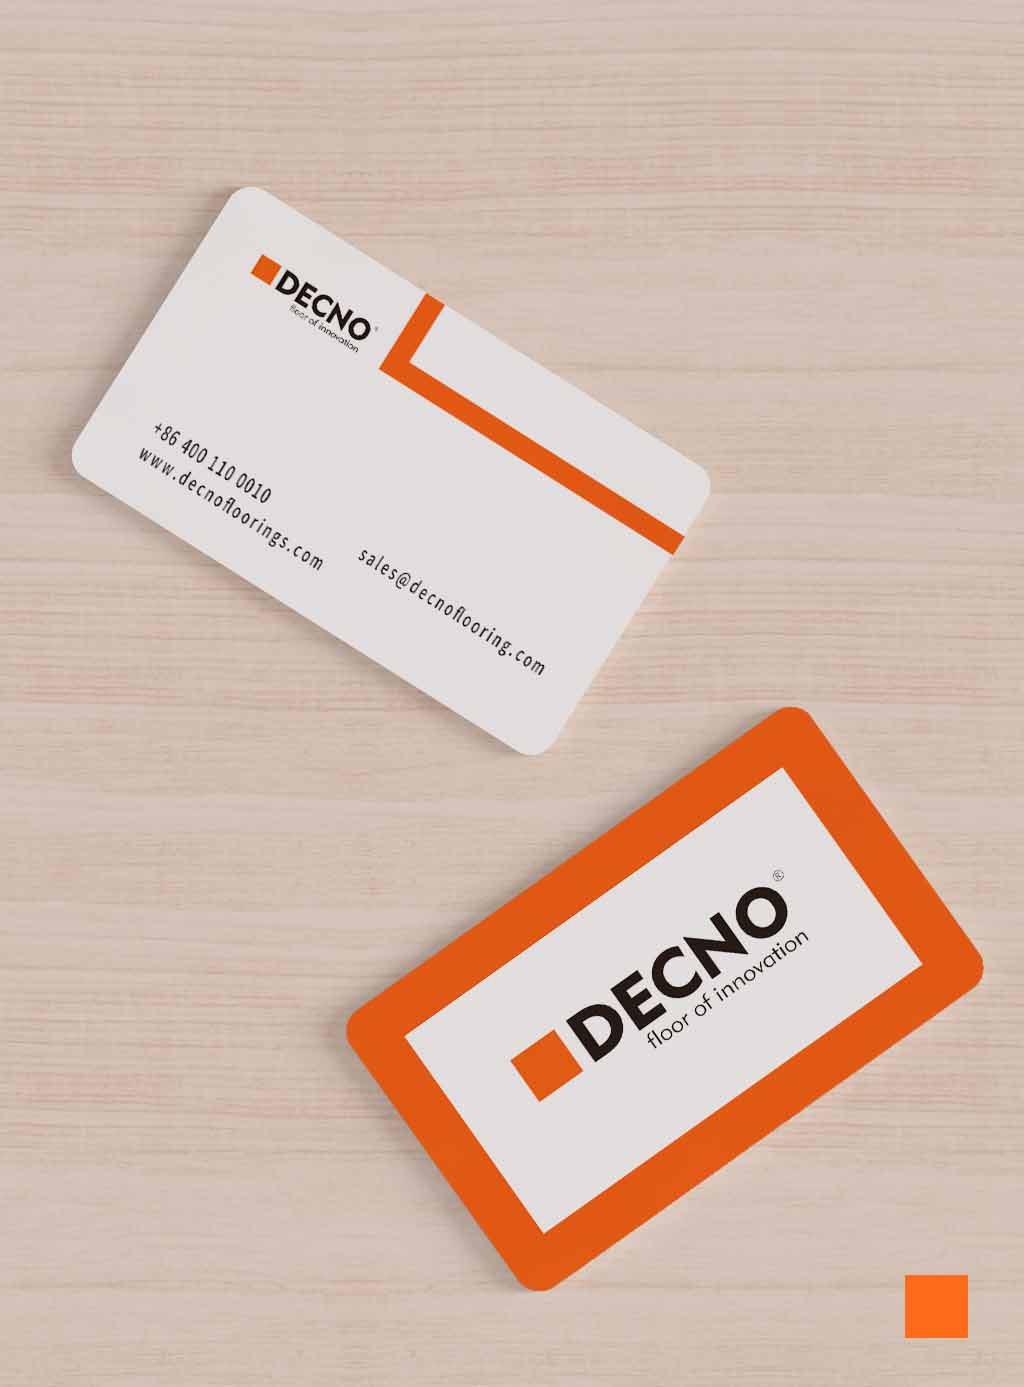 New Logo, Better DECNO